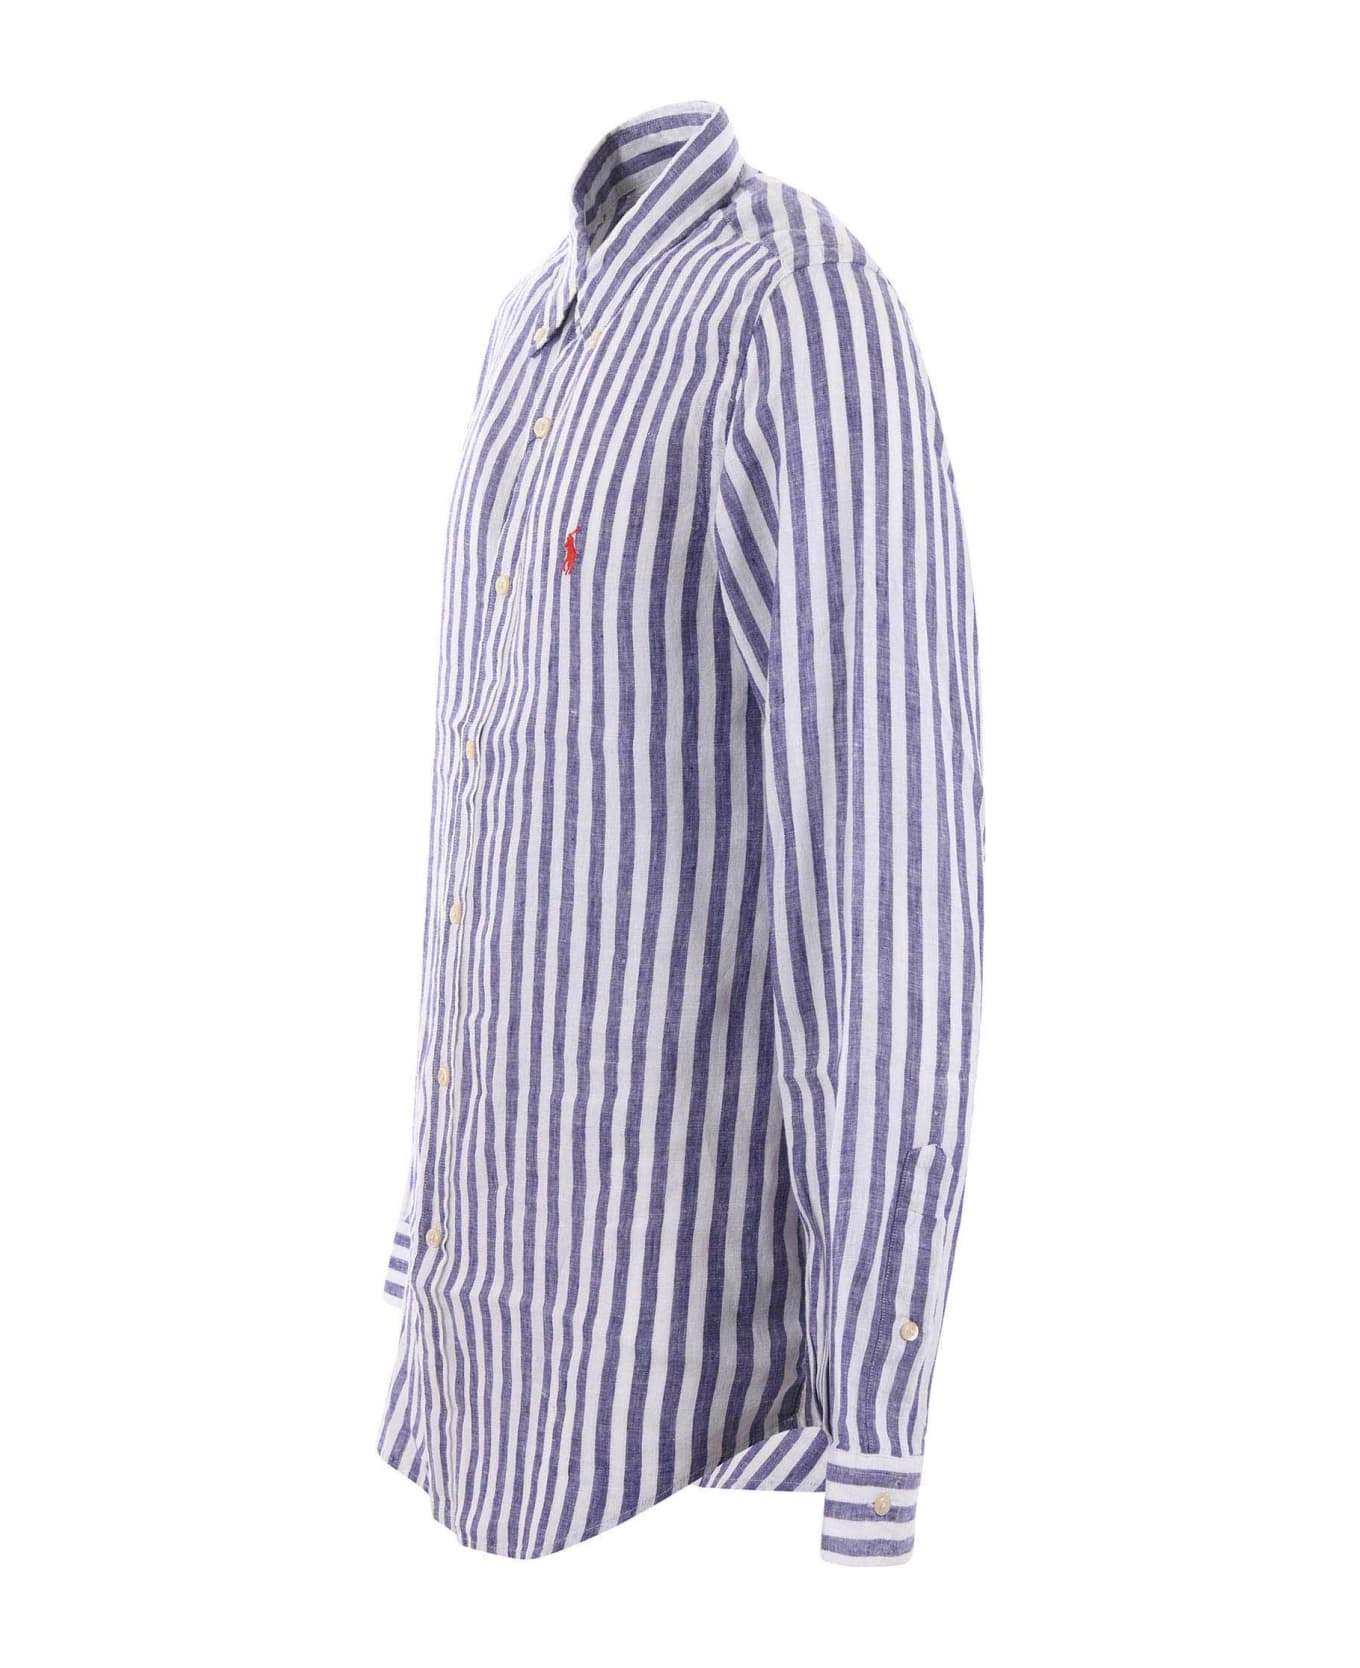 Polo Ralph Lauren Shirt - Bianco/blu